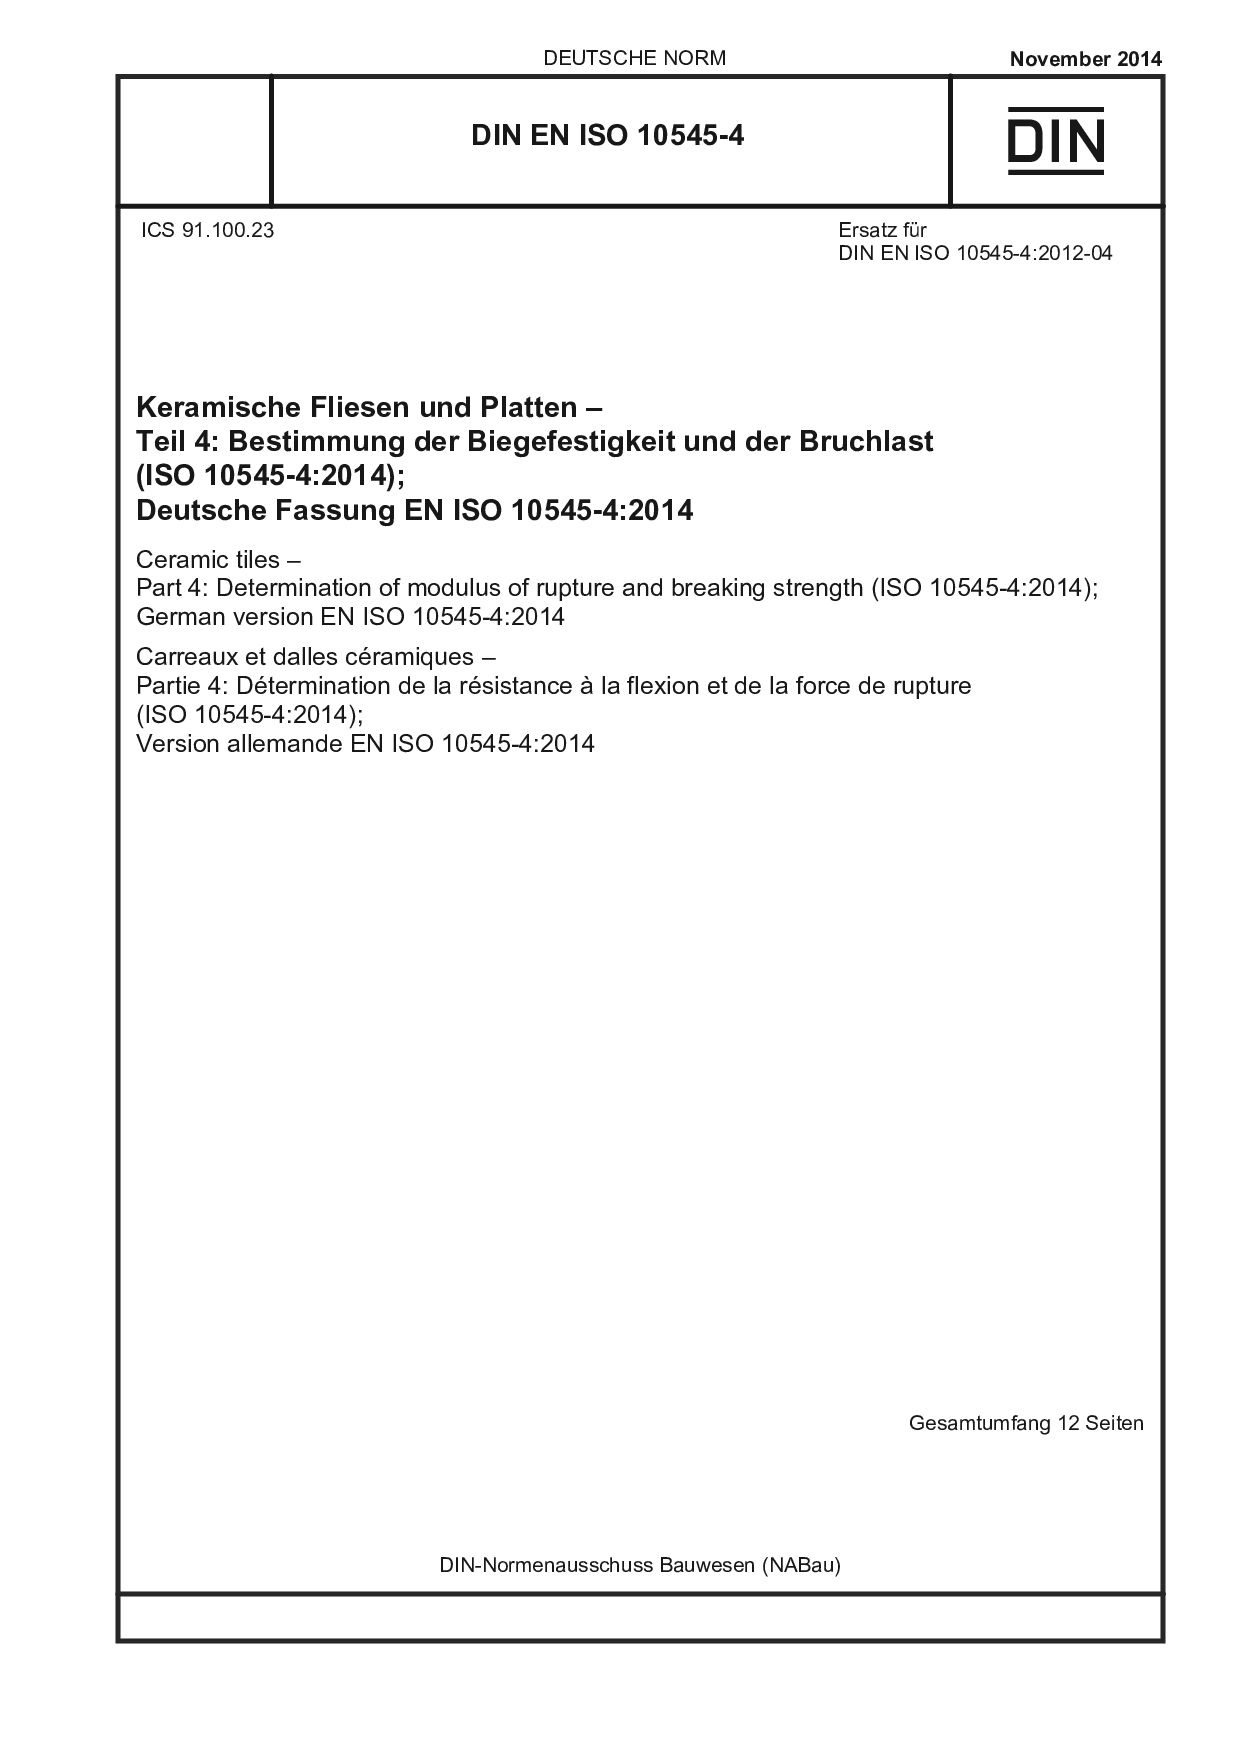 DIN EN ISO 10545-4:2014